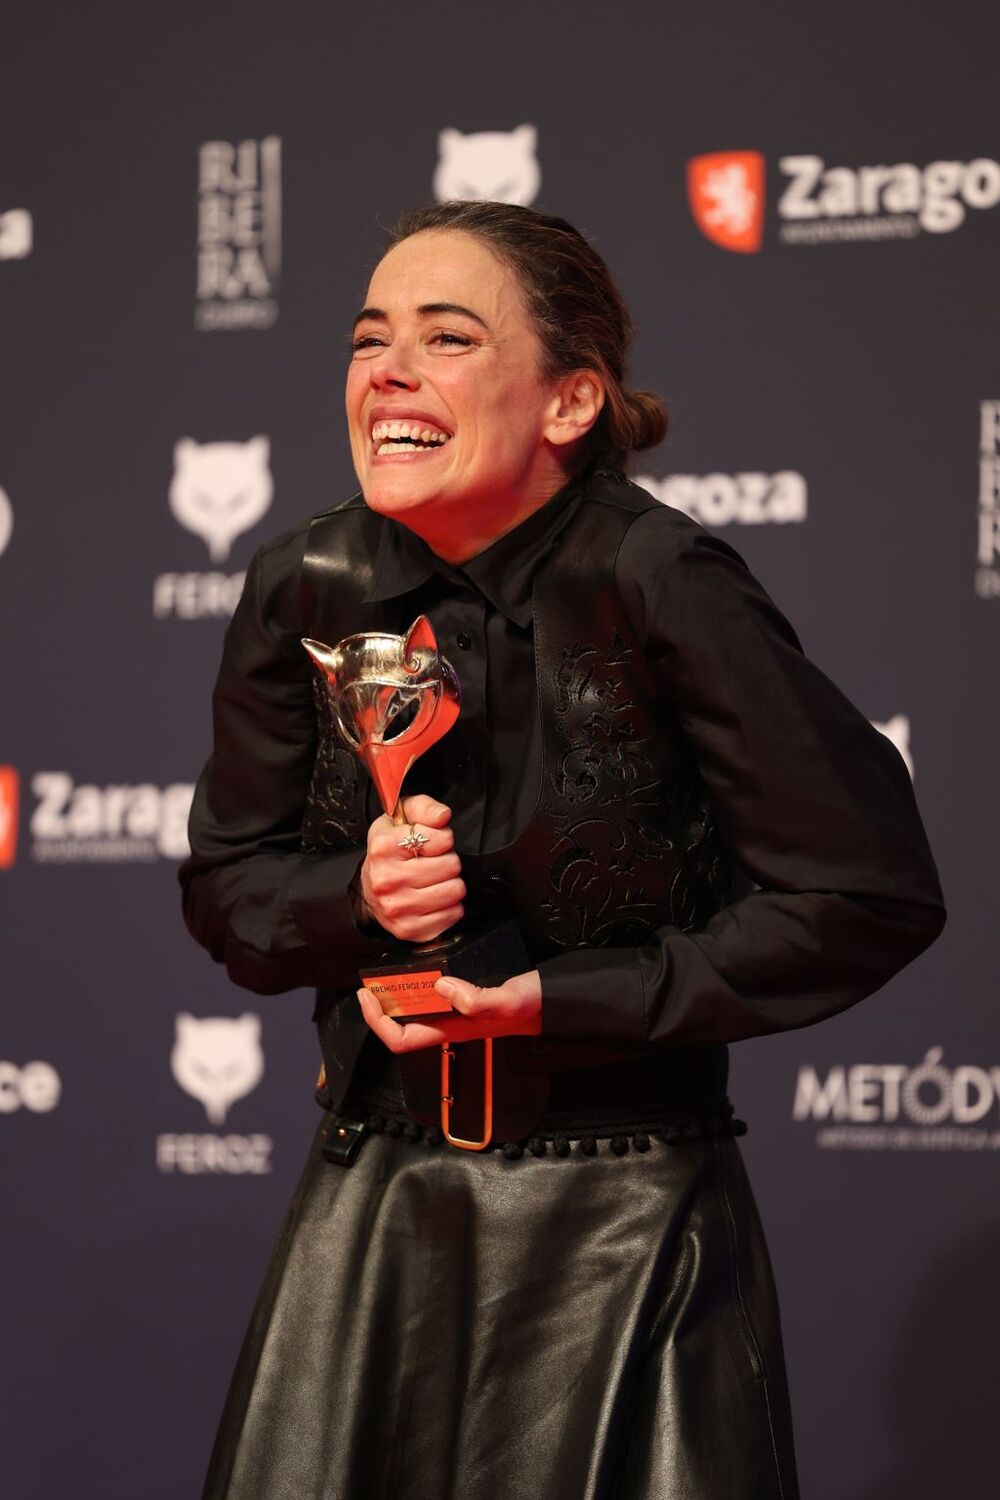 La actriz Patricia López Arnaiz posa en el photocall tras recibor el premio 'Mejor actriz de reparto de una serie' por ‘Intimidad’   / FABIÁN SIMÓN